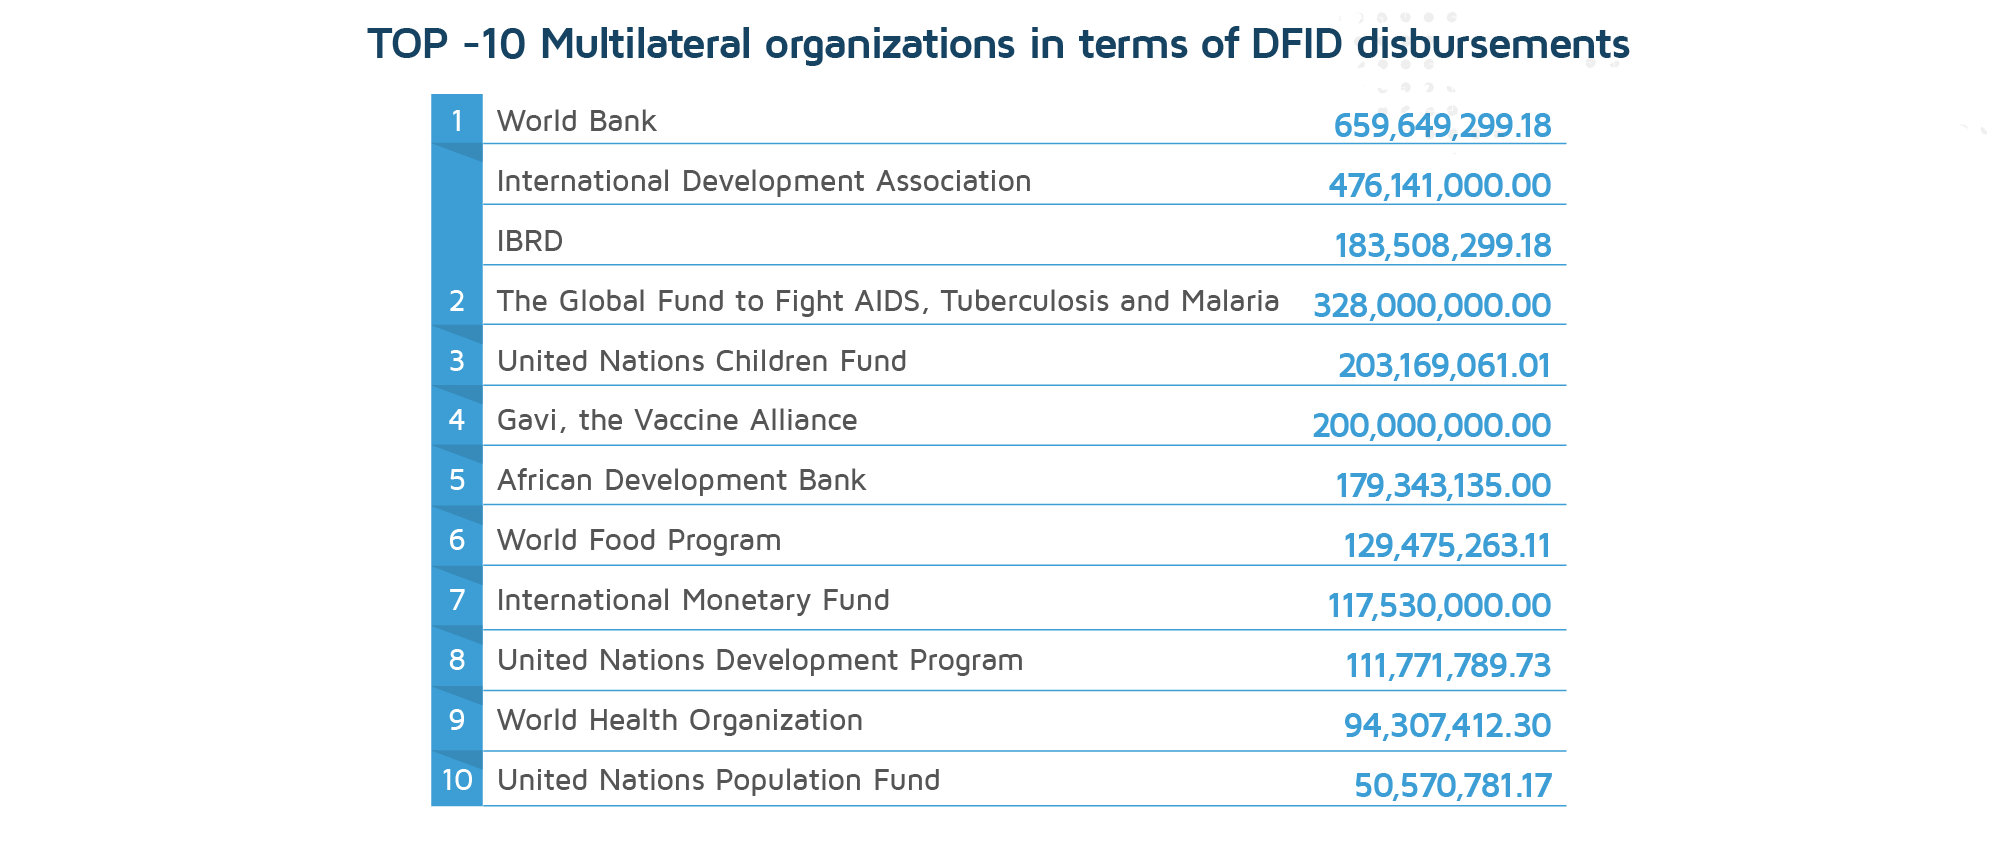 TOP-10 Multilaterals in terms of DFID disbursements, 2020